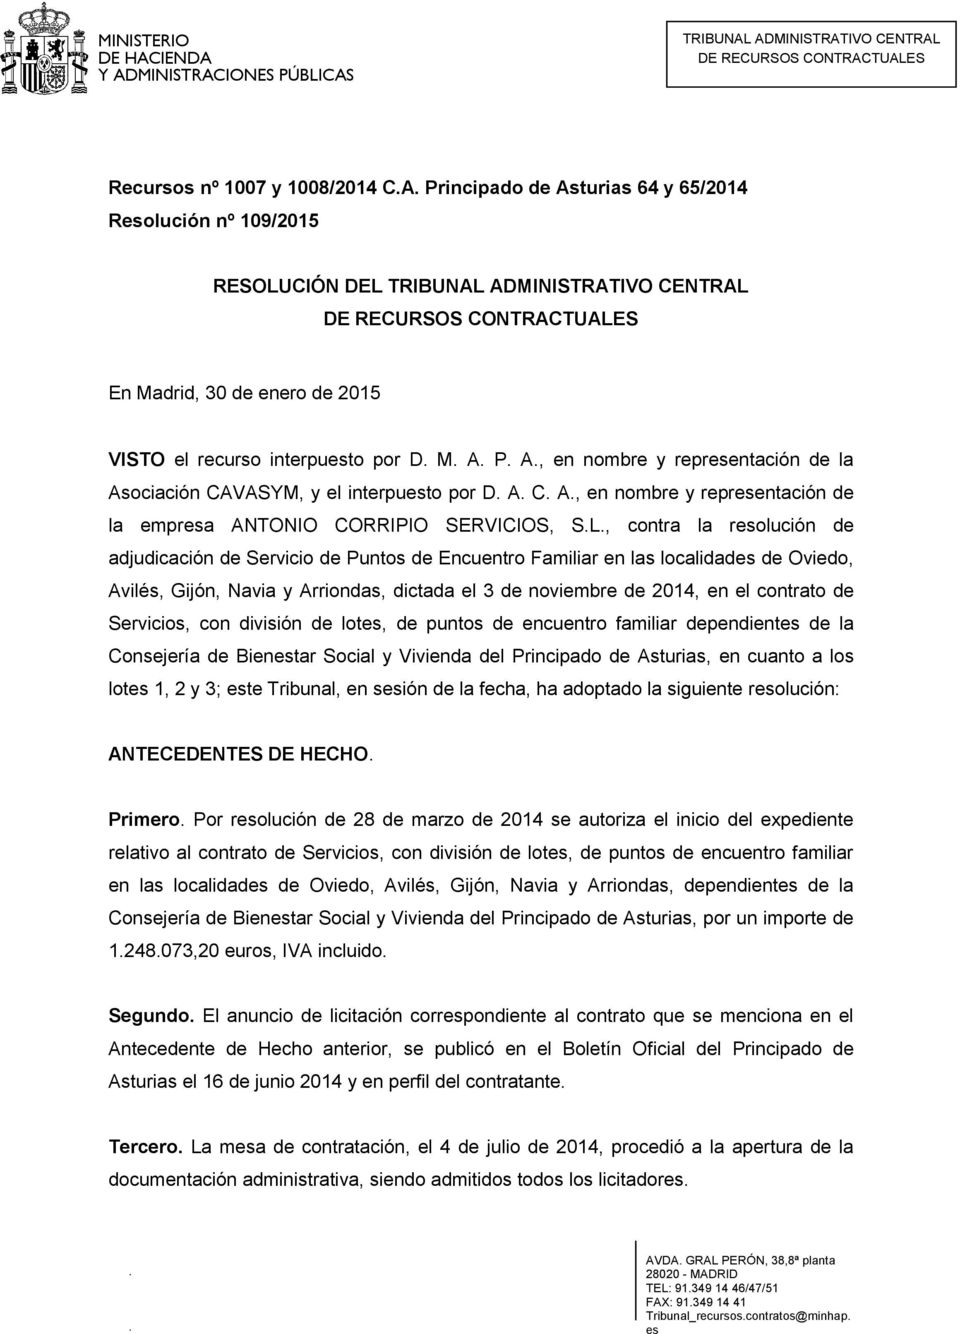 , contra la resolución de adjudicación de Servicio de Puntos de Encuentro Familiar en las localidades de Oviedo, Avilés, Gijón, Navia y Arriondas, dictada el 3 de noviembre de 2014, en el contrato de